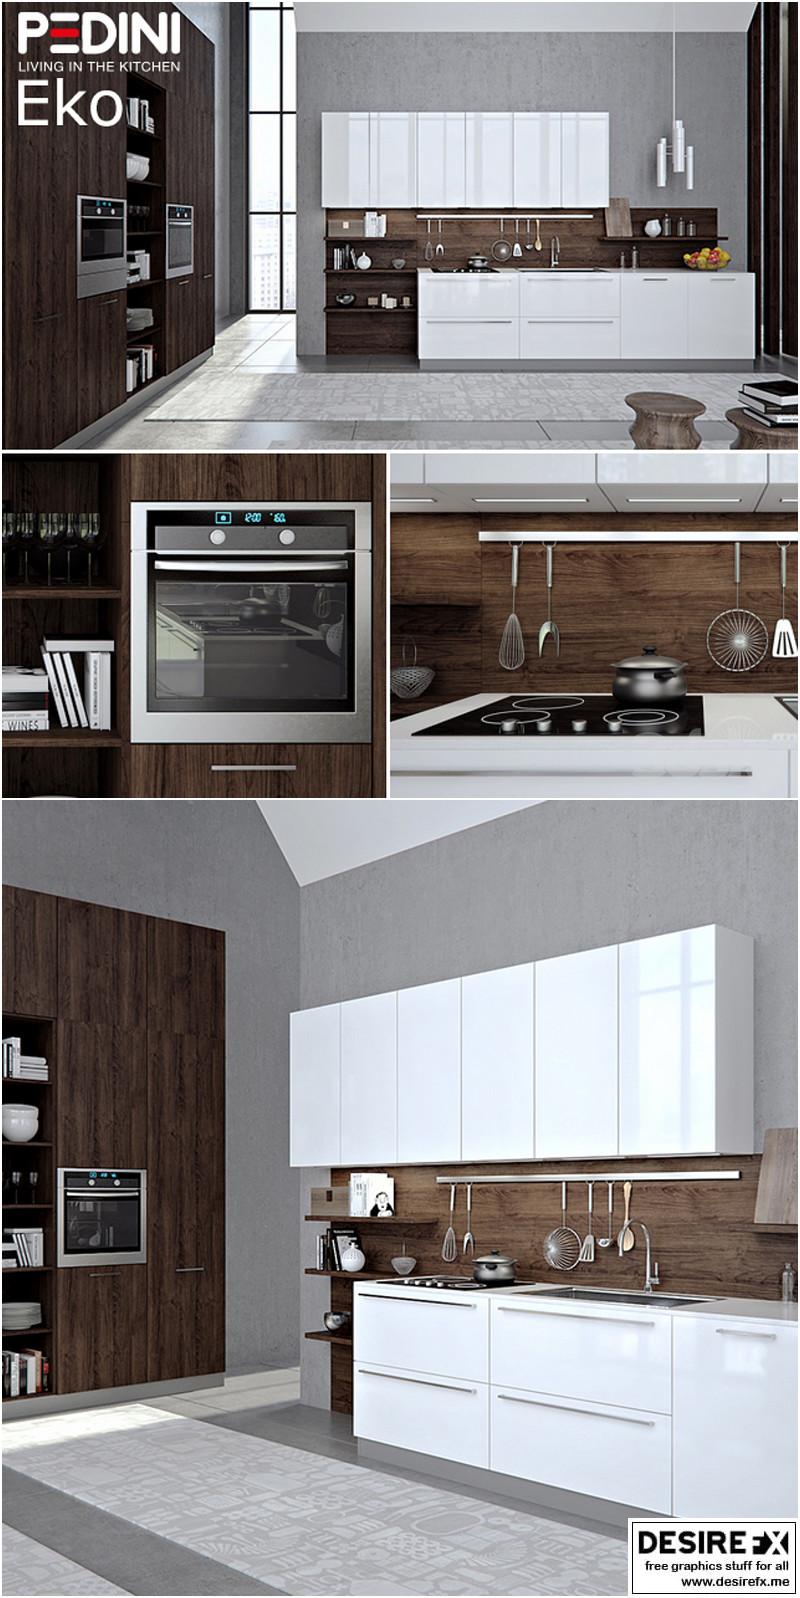 Desire FX 3d models | Kitchen Pedini Eko set 3 – 3D Model